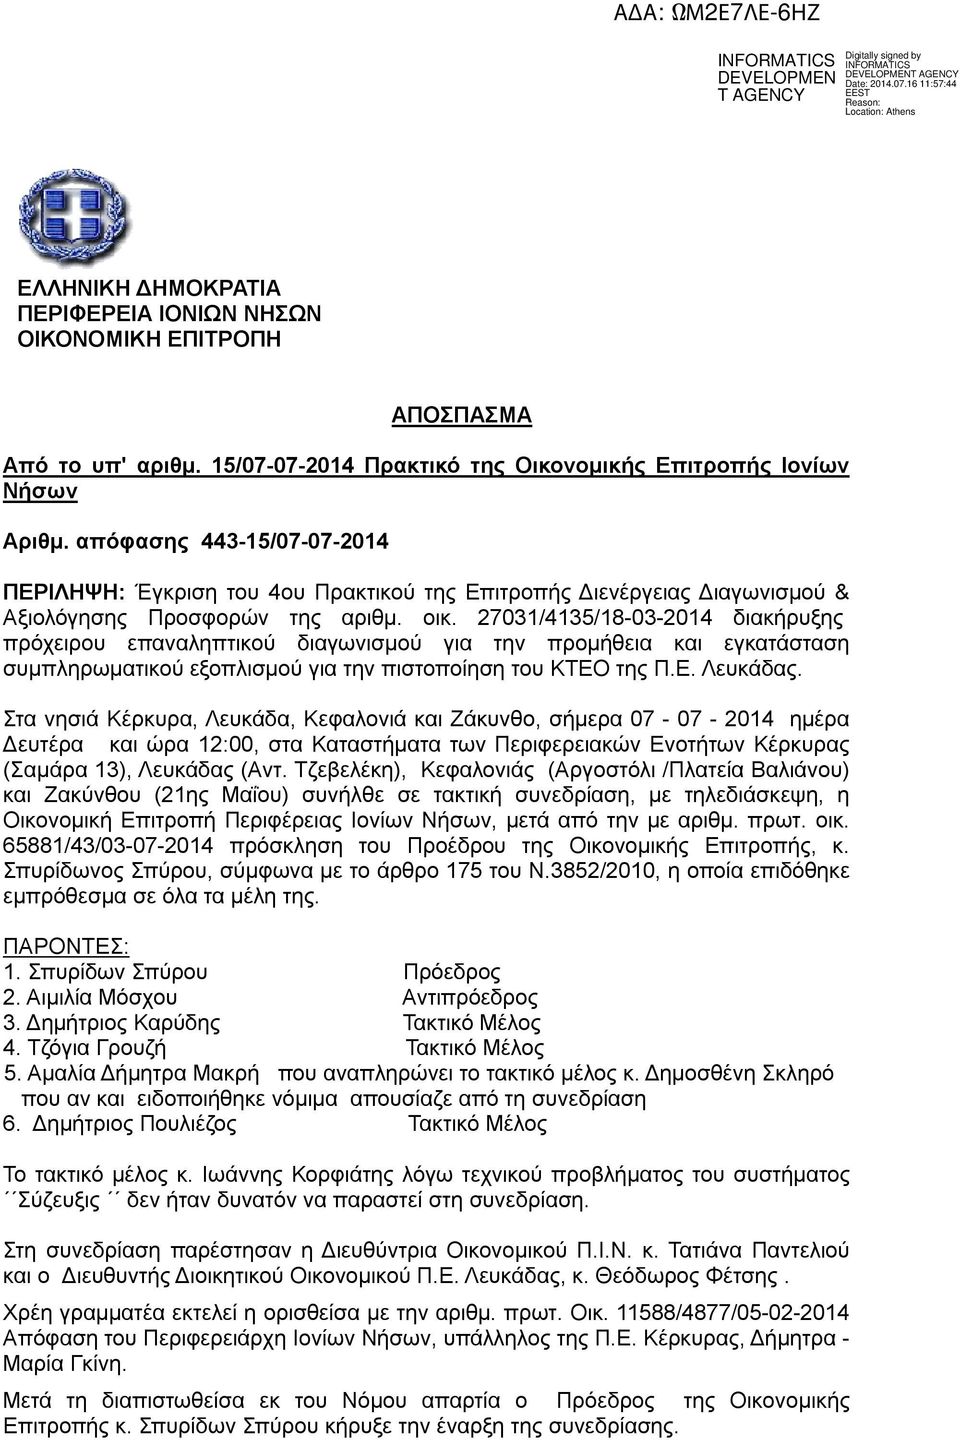 27031/4135/18-03-2014 διακήρυξης πρόχειρου επαναληπτικού διαγωνισμού για την προμήθεια και εγκατάσταση συμπληρωματικού εξοπλισμού για την πιστοποίηση του ΚΤΕΟ της Π.Ε. Λευκάδας.